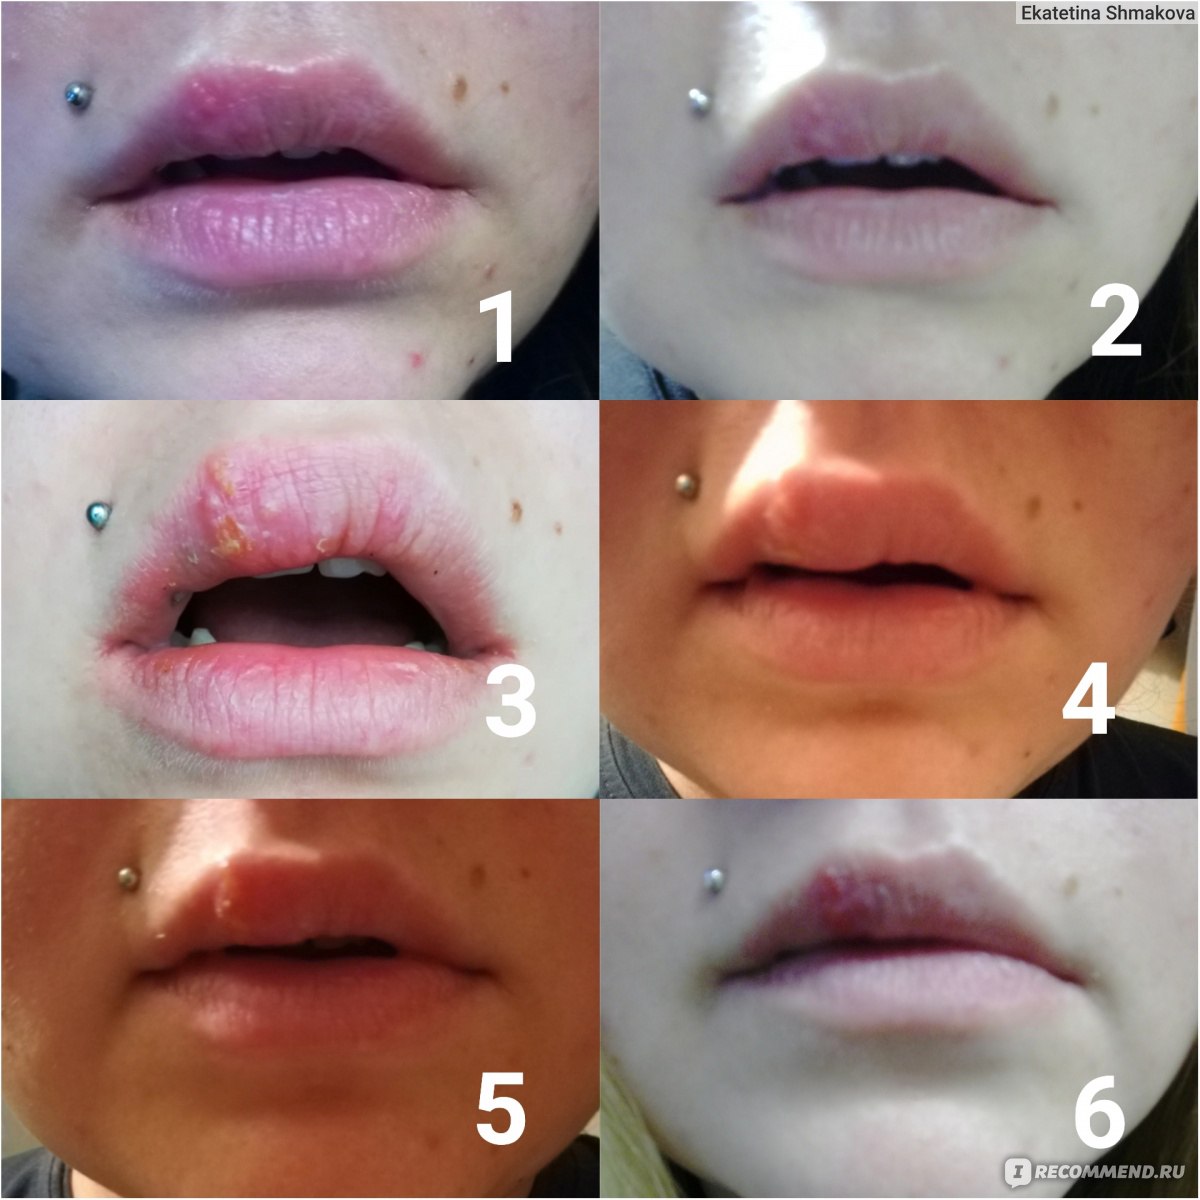 Этапы заживления простуды на губах